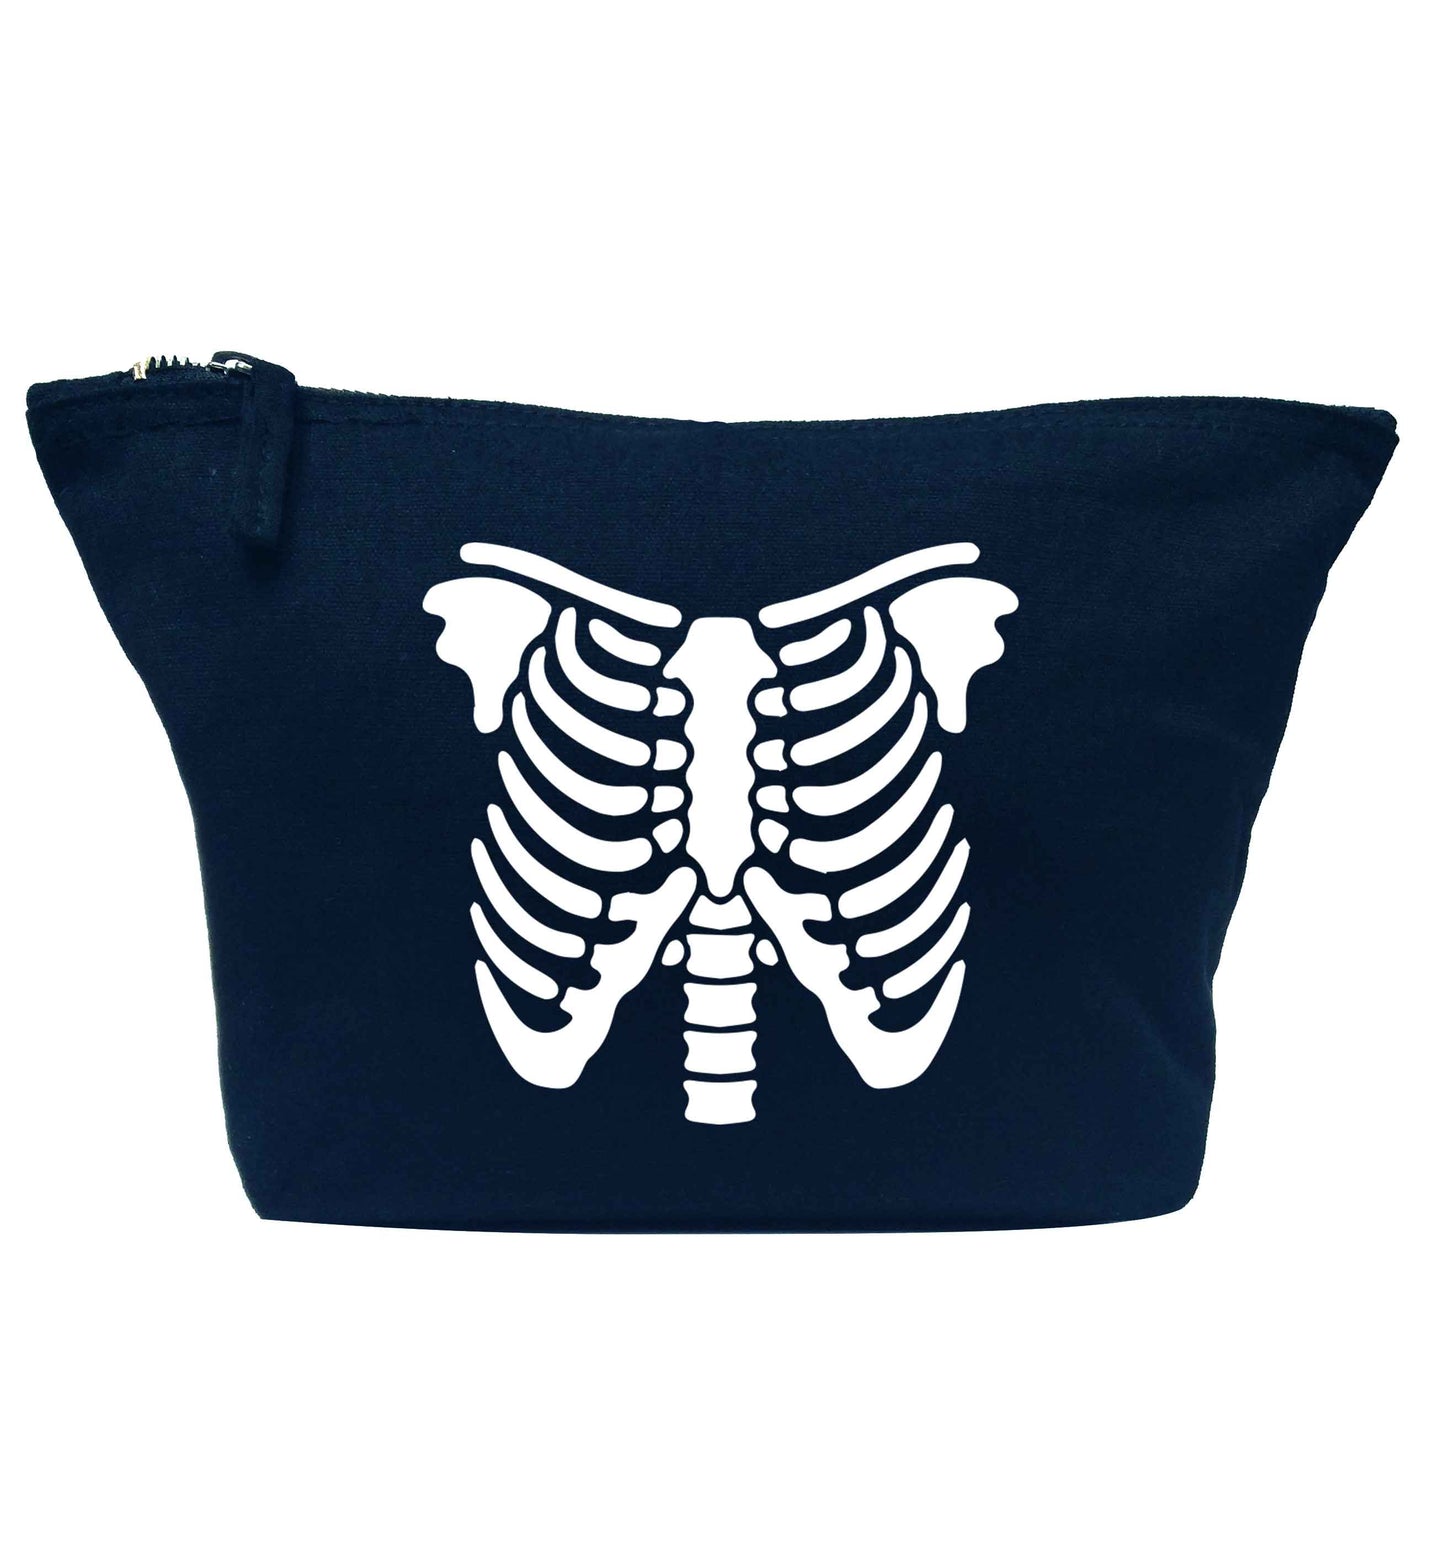 Skeleton ribcage navy makeup bag